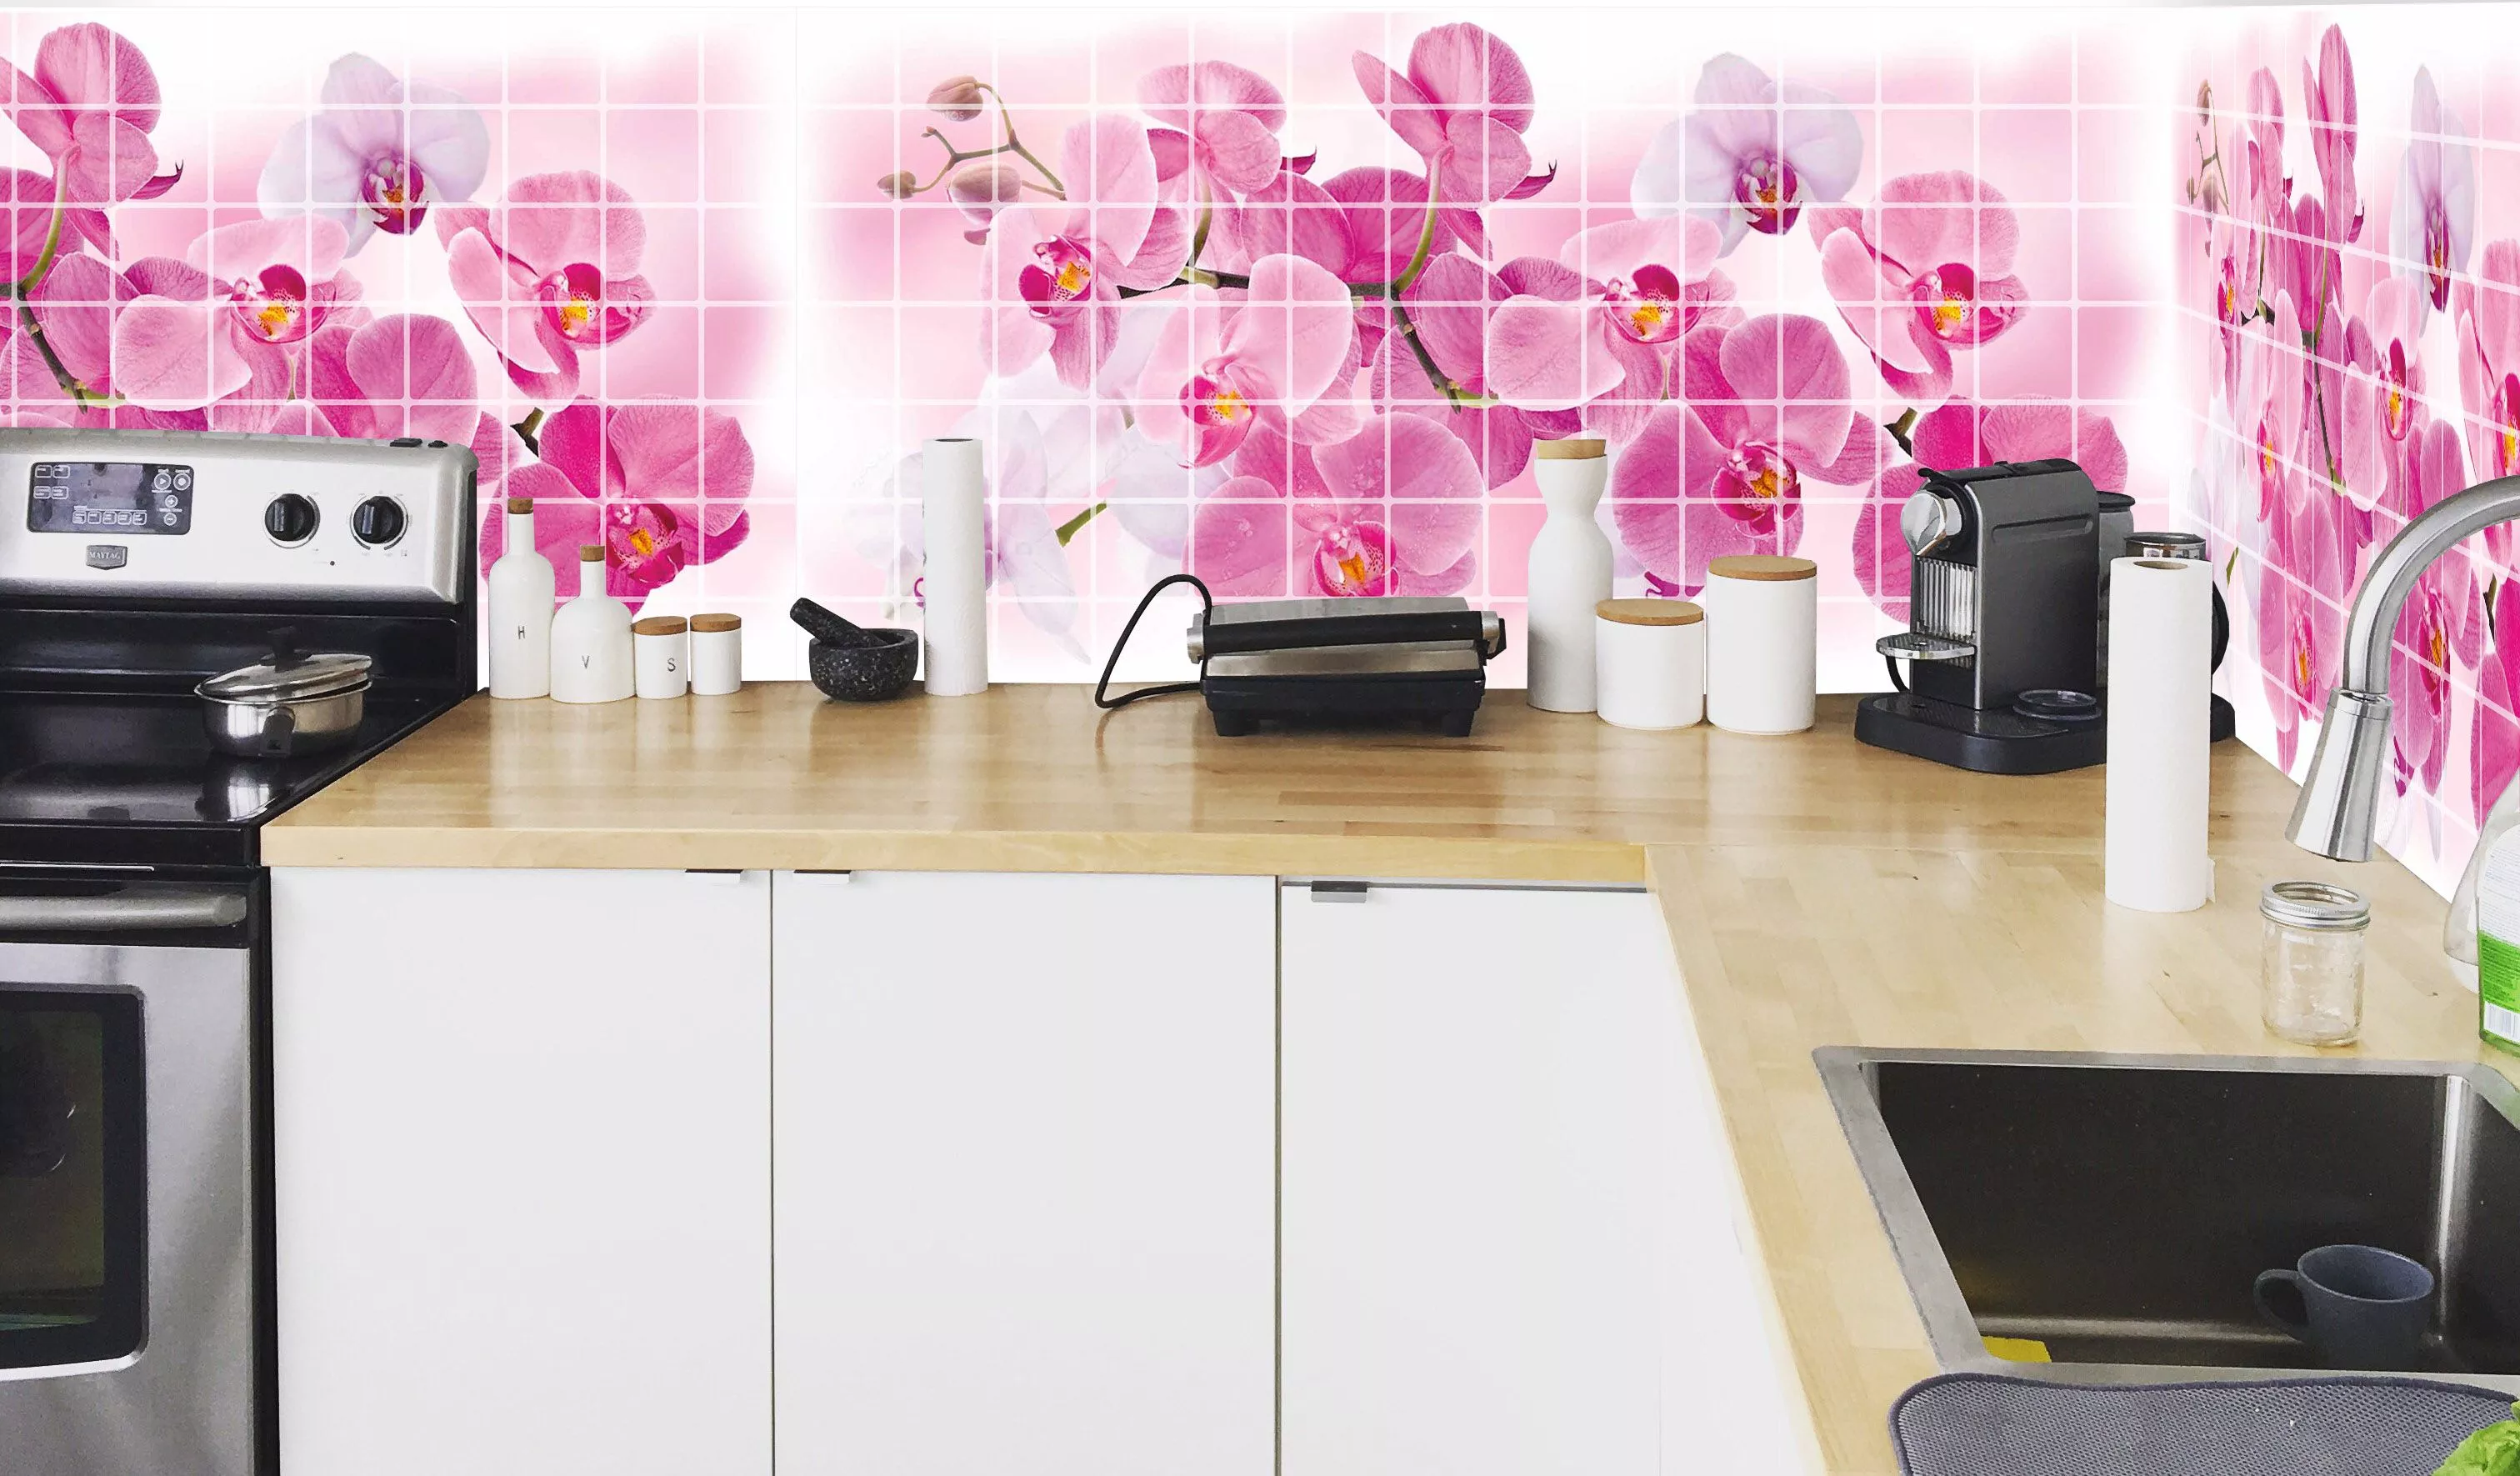 Фартук кухня магазин. Панель ПВХ мозаика Орхидея Розея. Панель ПВХ мозаика Орхидея Розея 480*955*0,2мм. Пластиковые панели для кухни. Пластиковые стеновые панели для кухни.